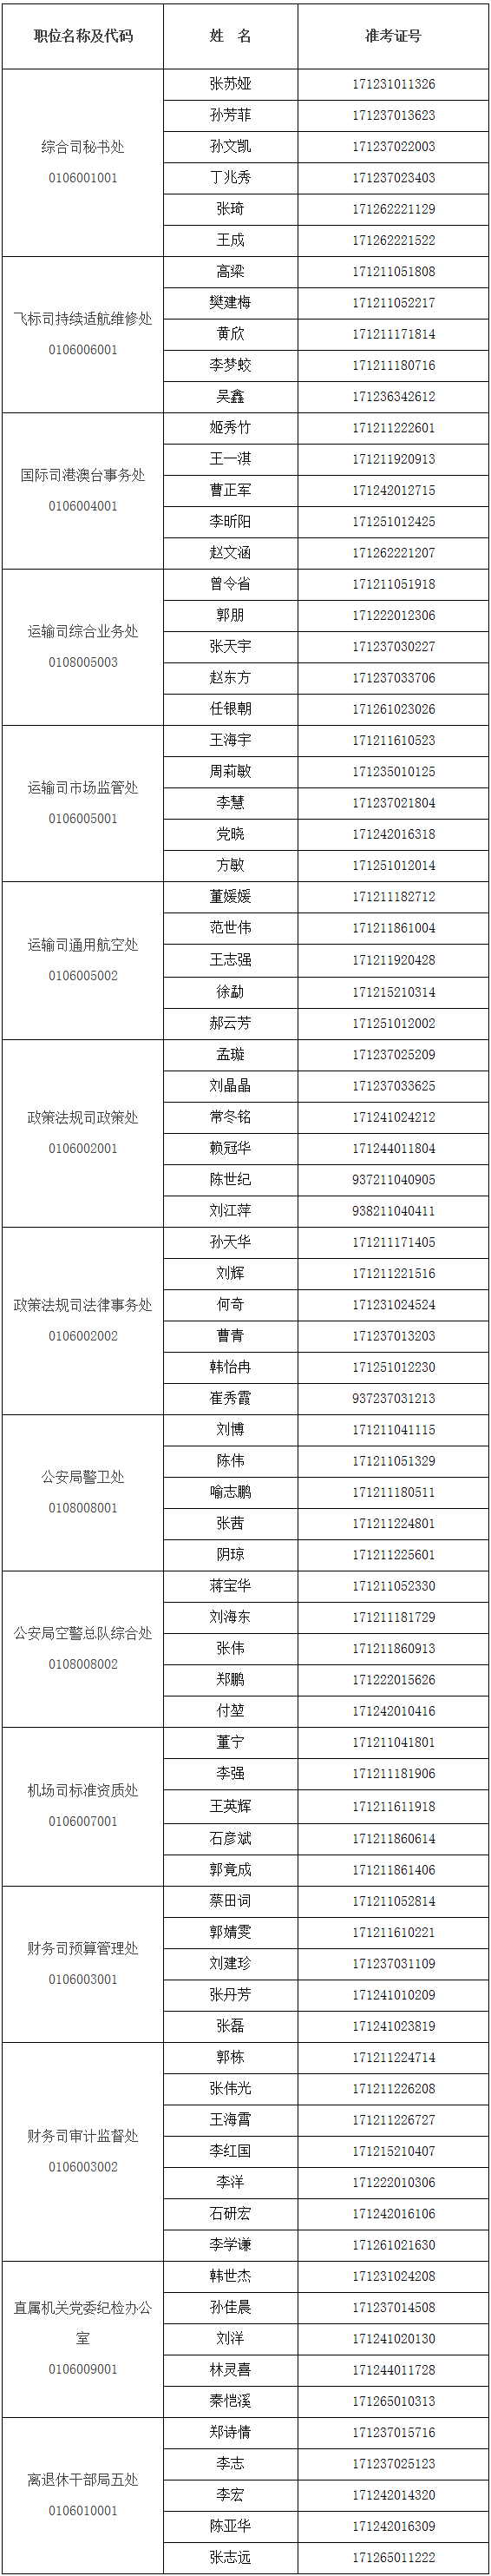 中国民用航空局面试考生名单.png